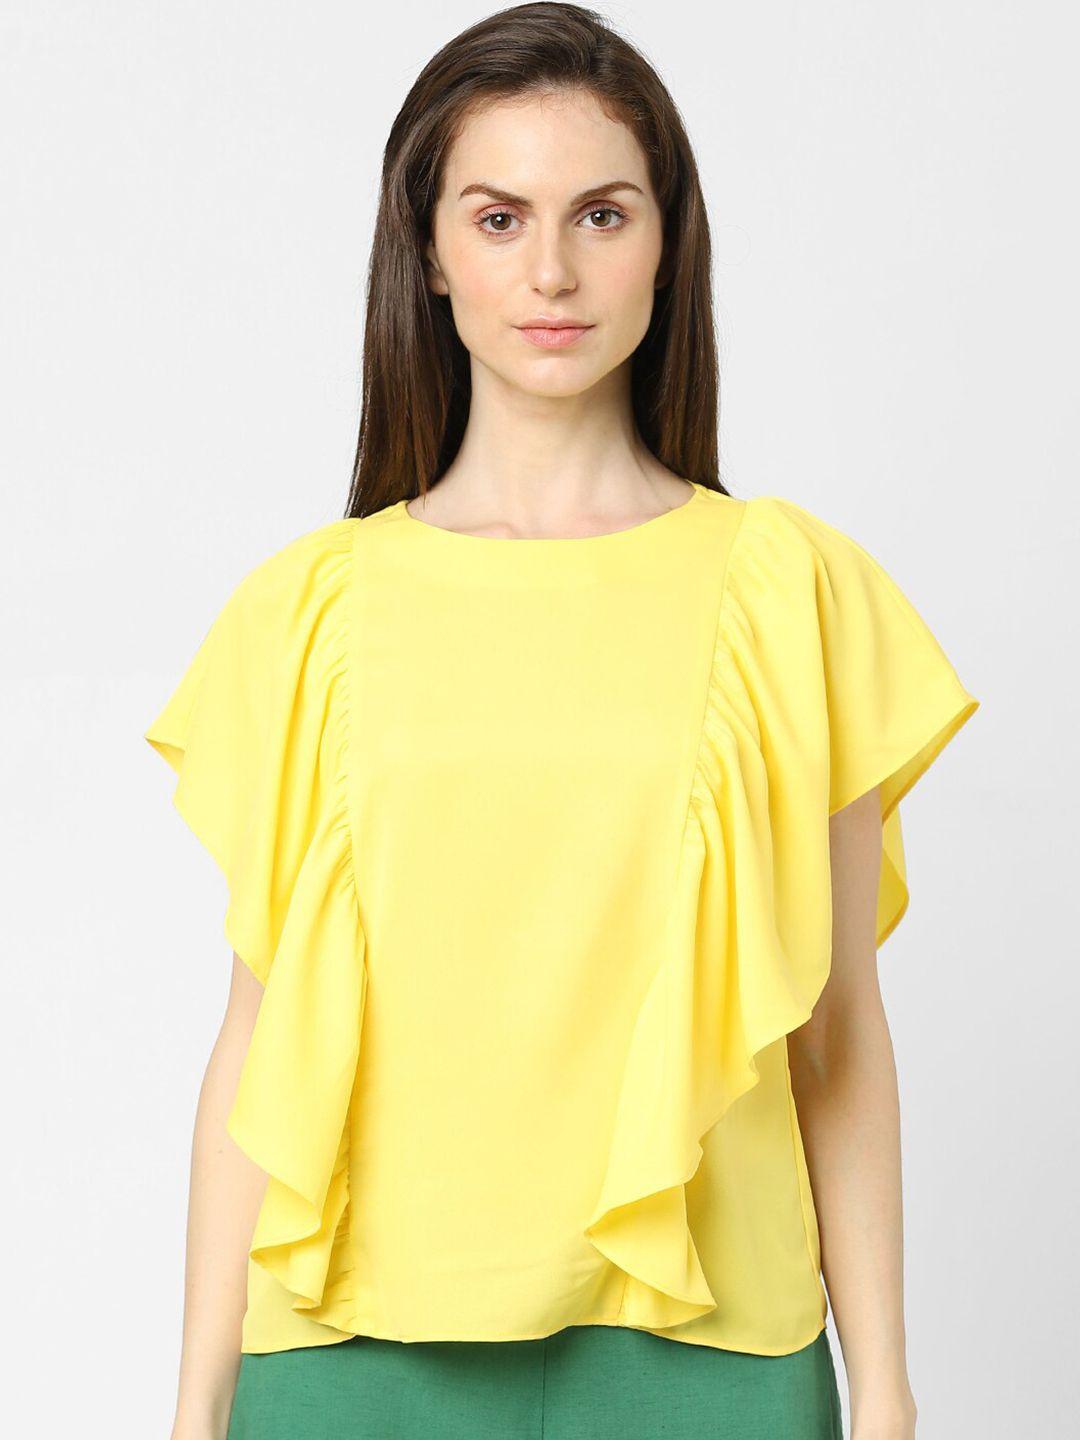 vero moda women yellow ruffles solid top